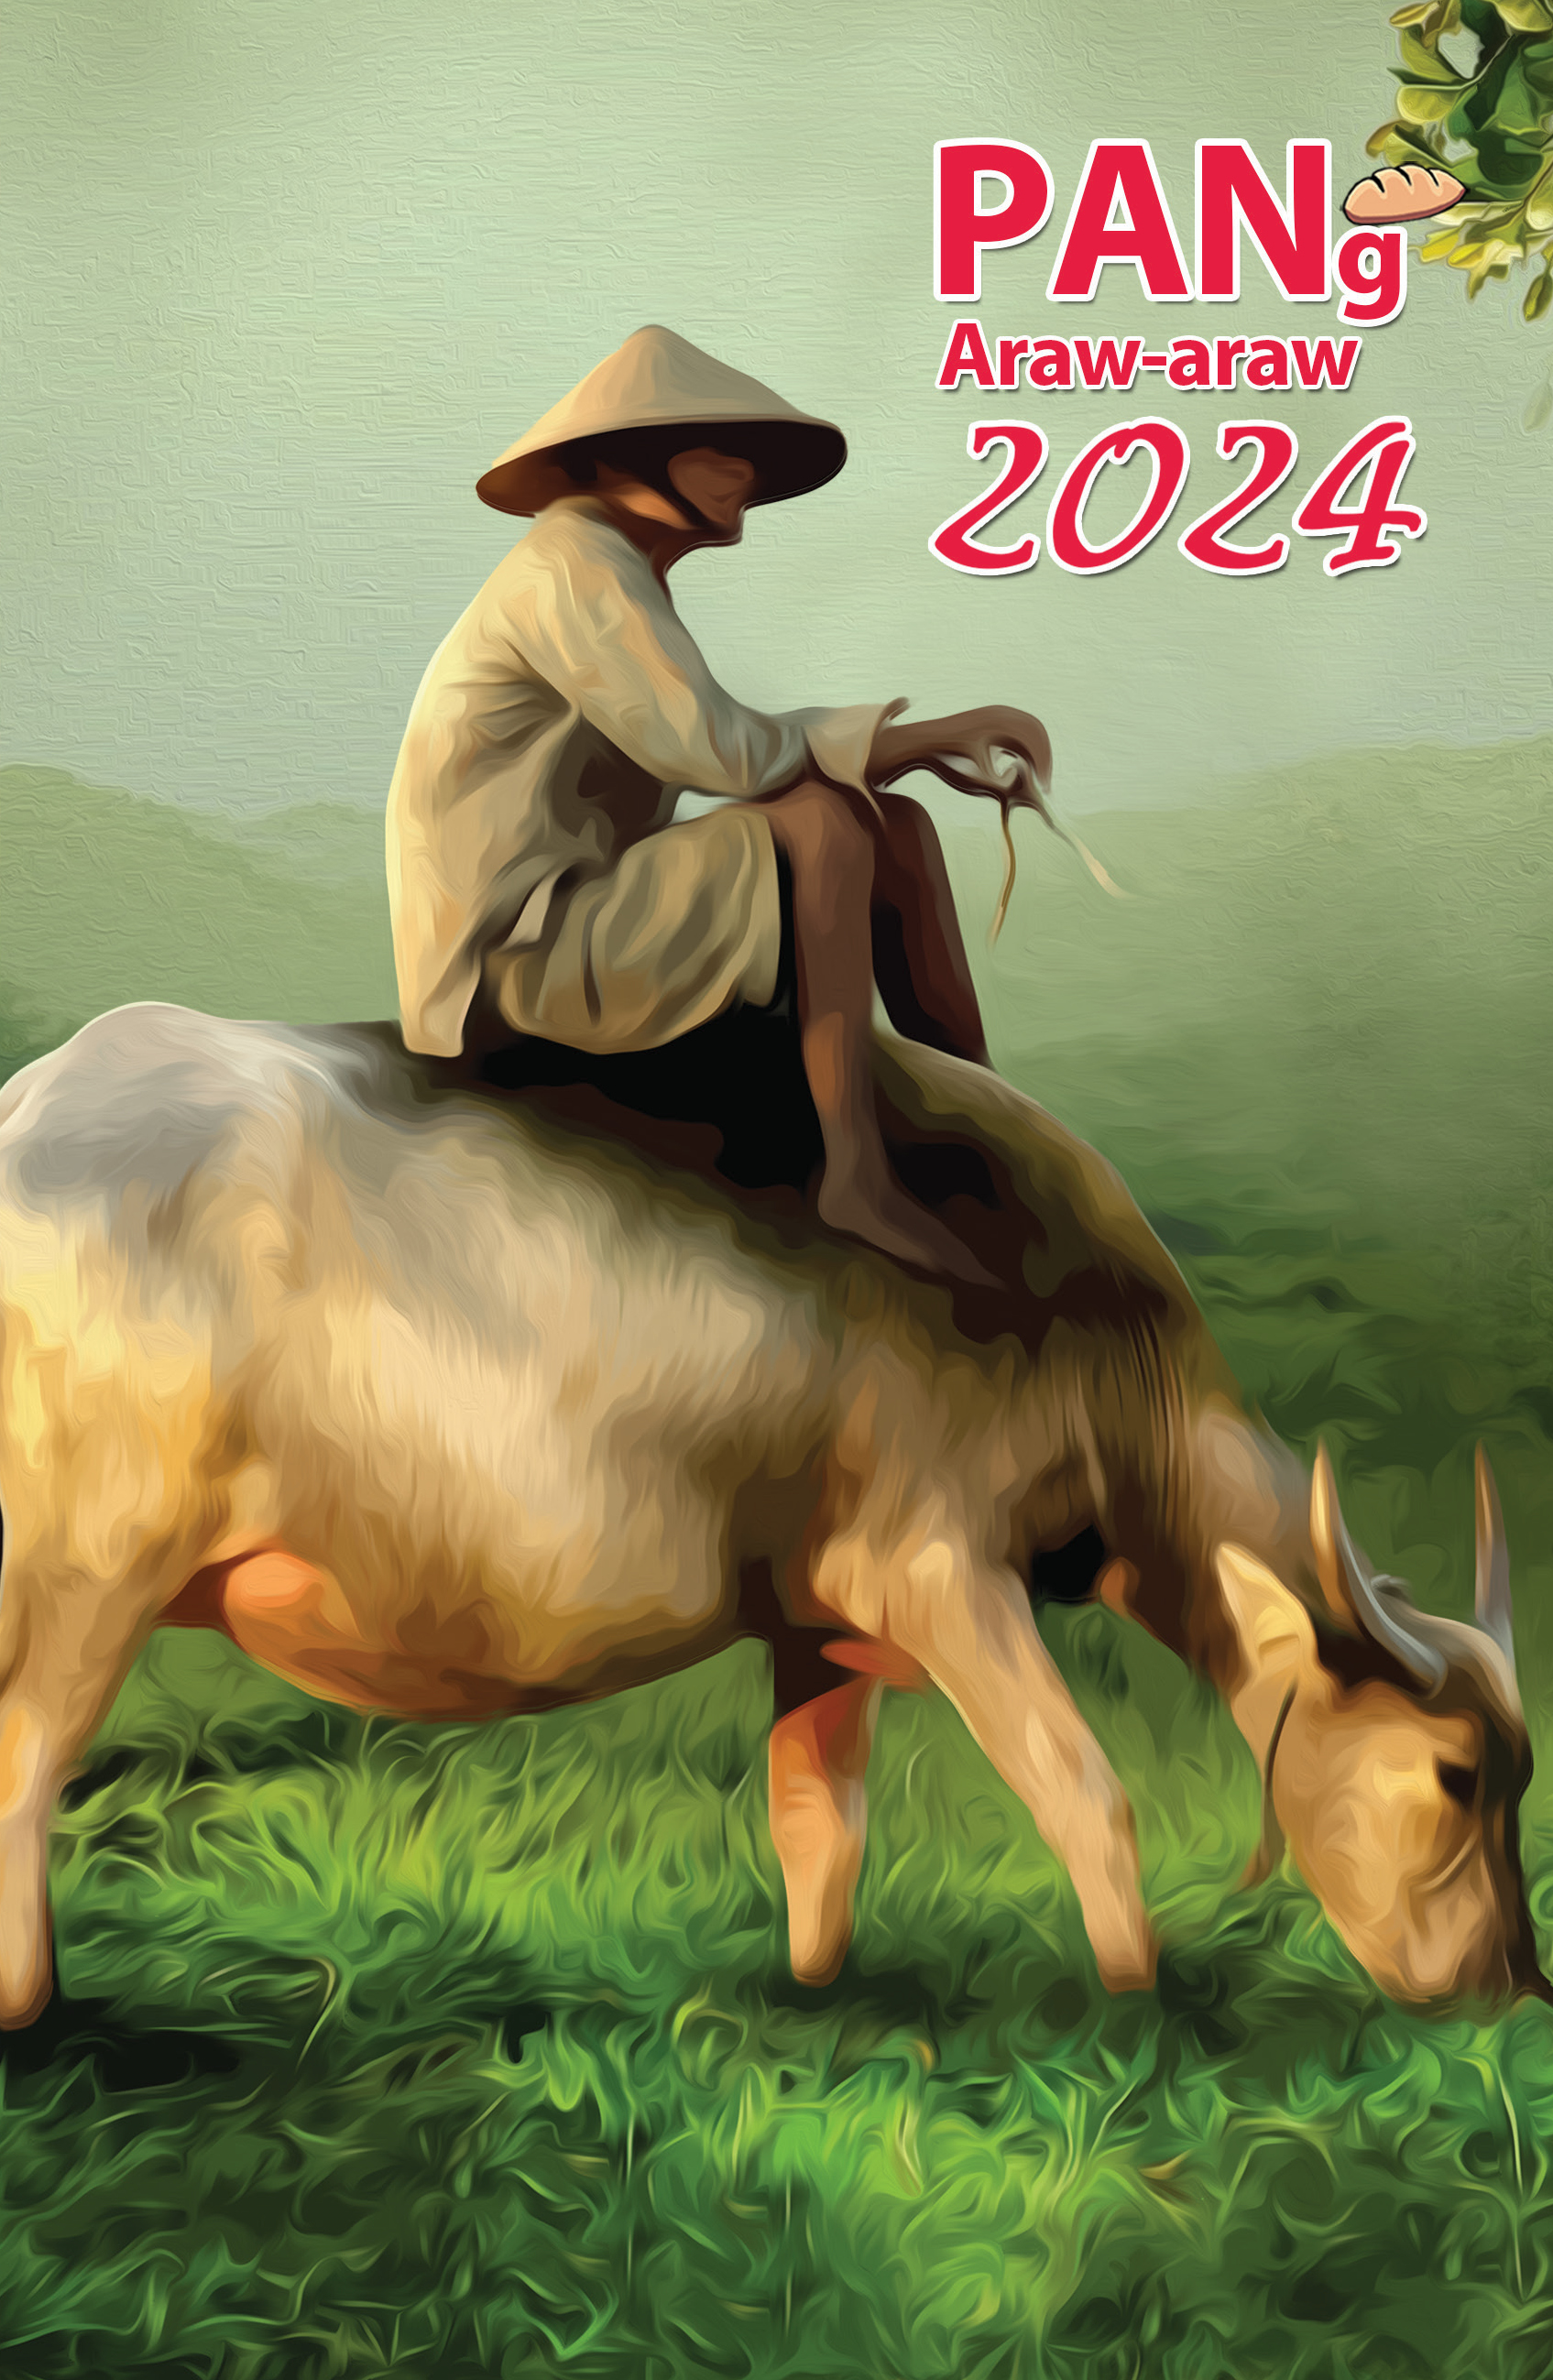 PANg Araw-araw 2024